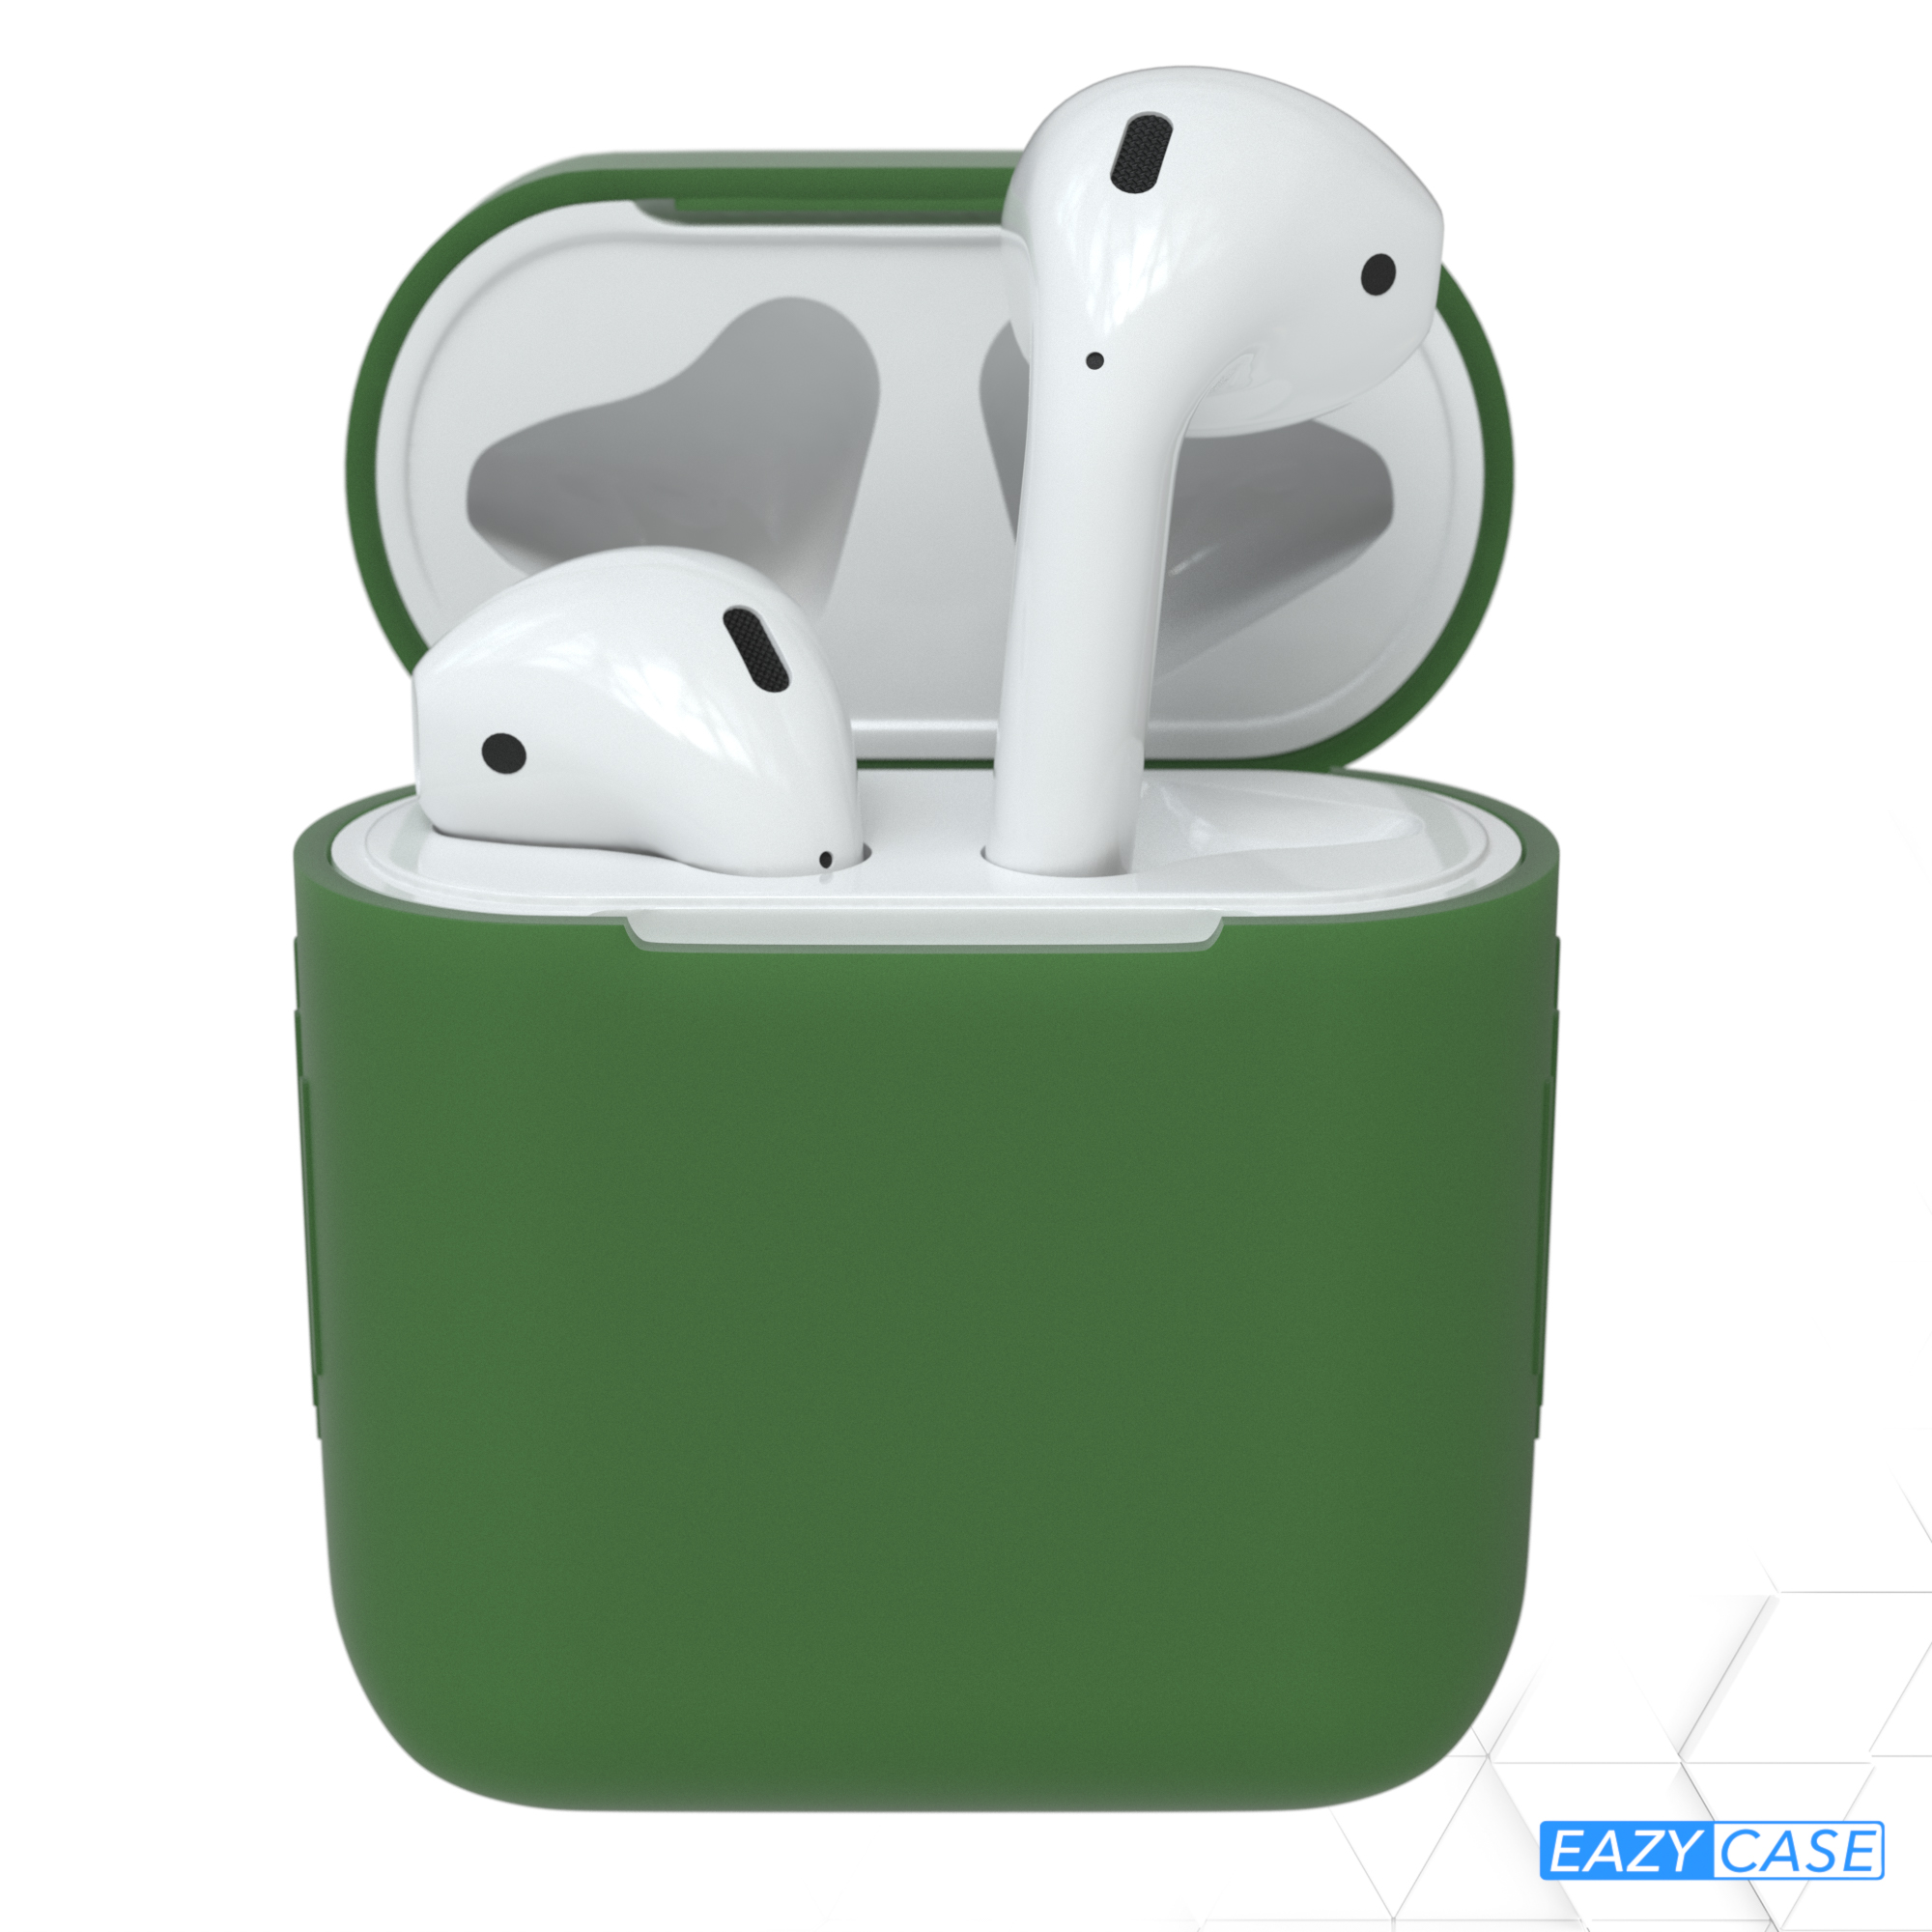 EAZY CASE AirPods Schutzhülle passend Silikon Case Sleeve Grün für: Apple